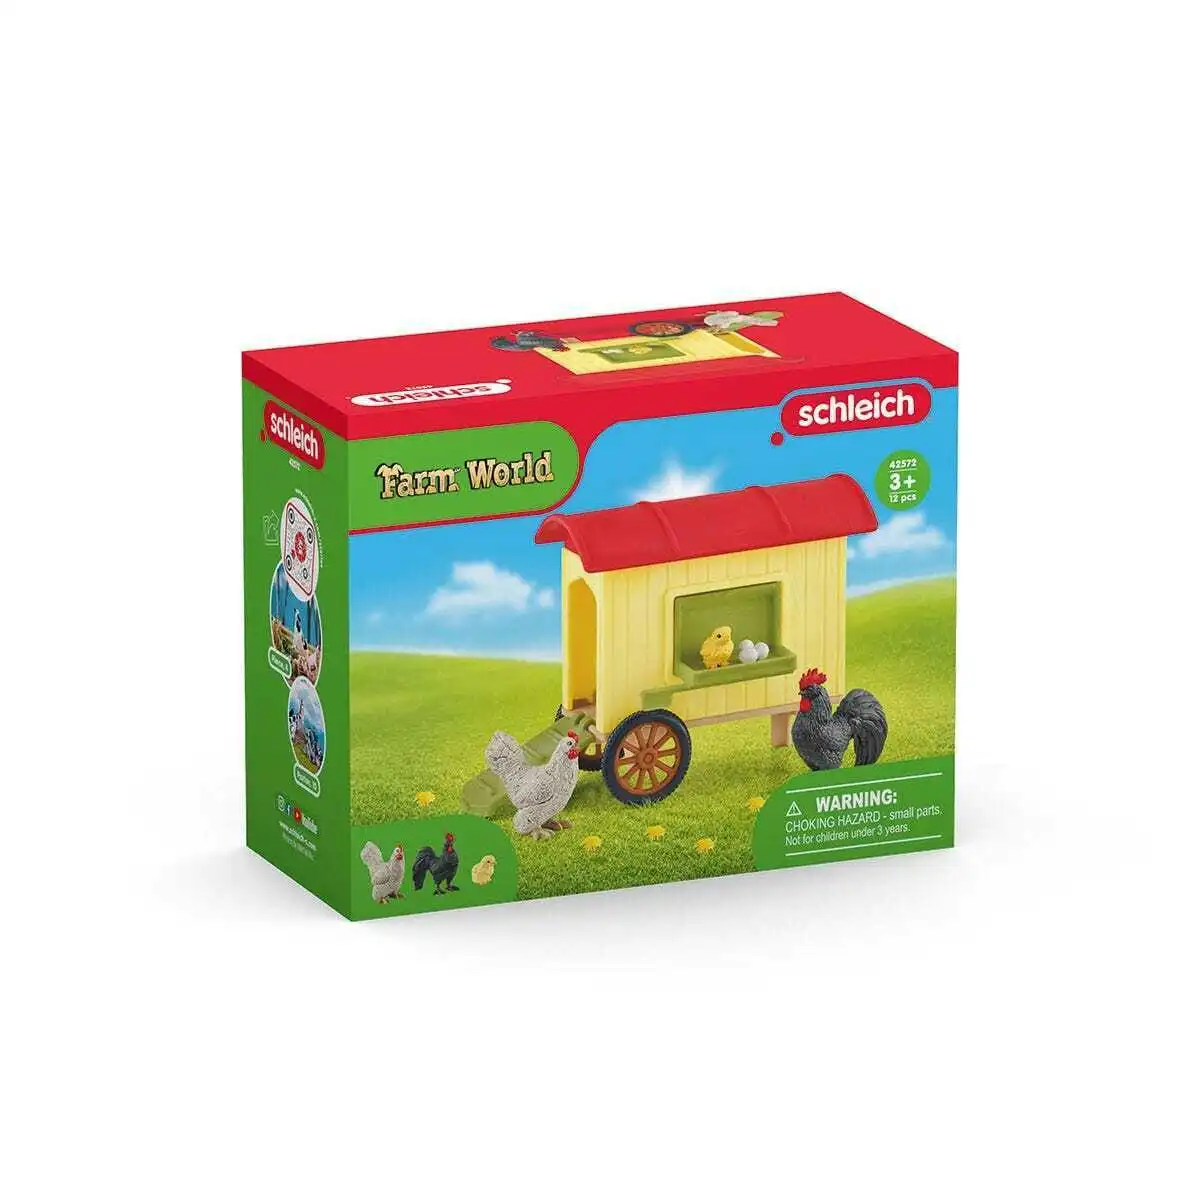 Schleich - Mobile Chicken Coop - Farm World Animal Playset